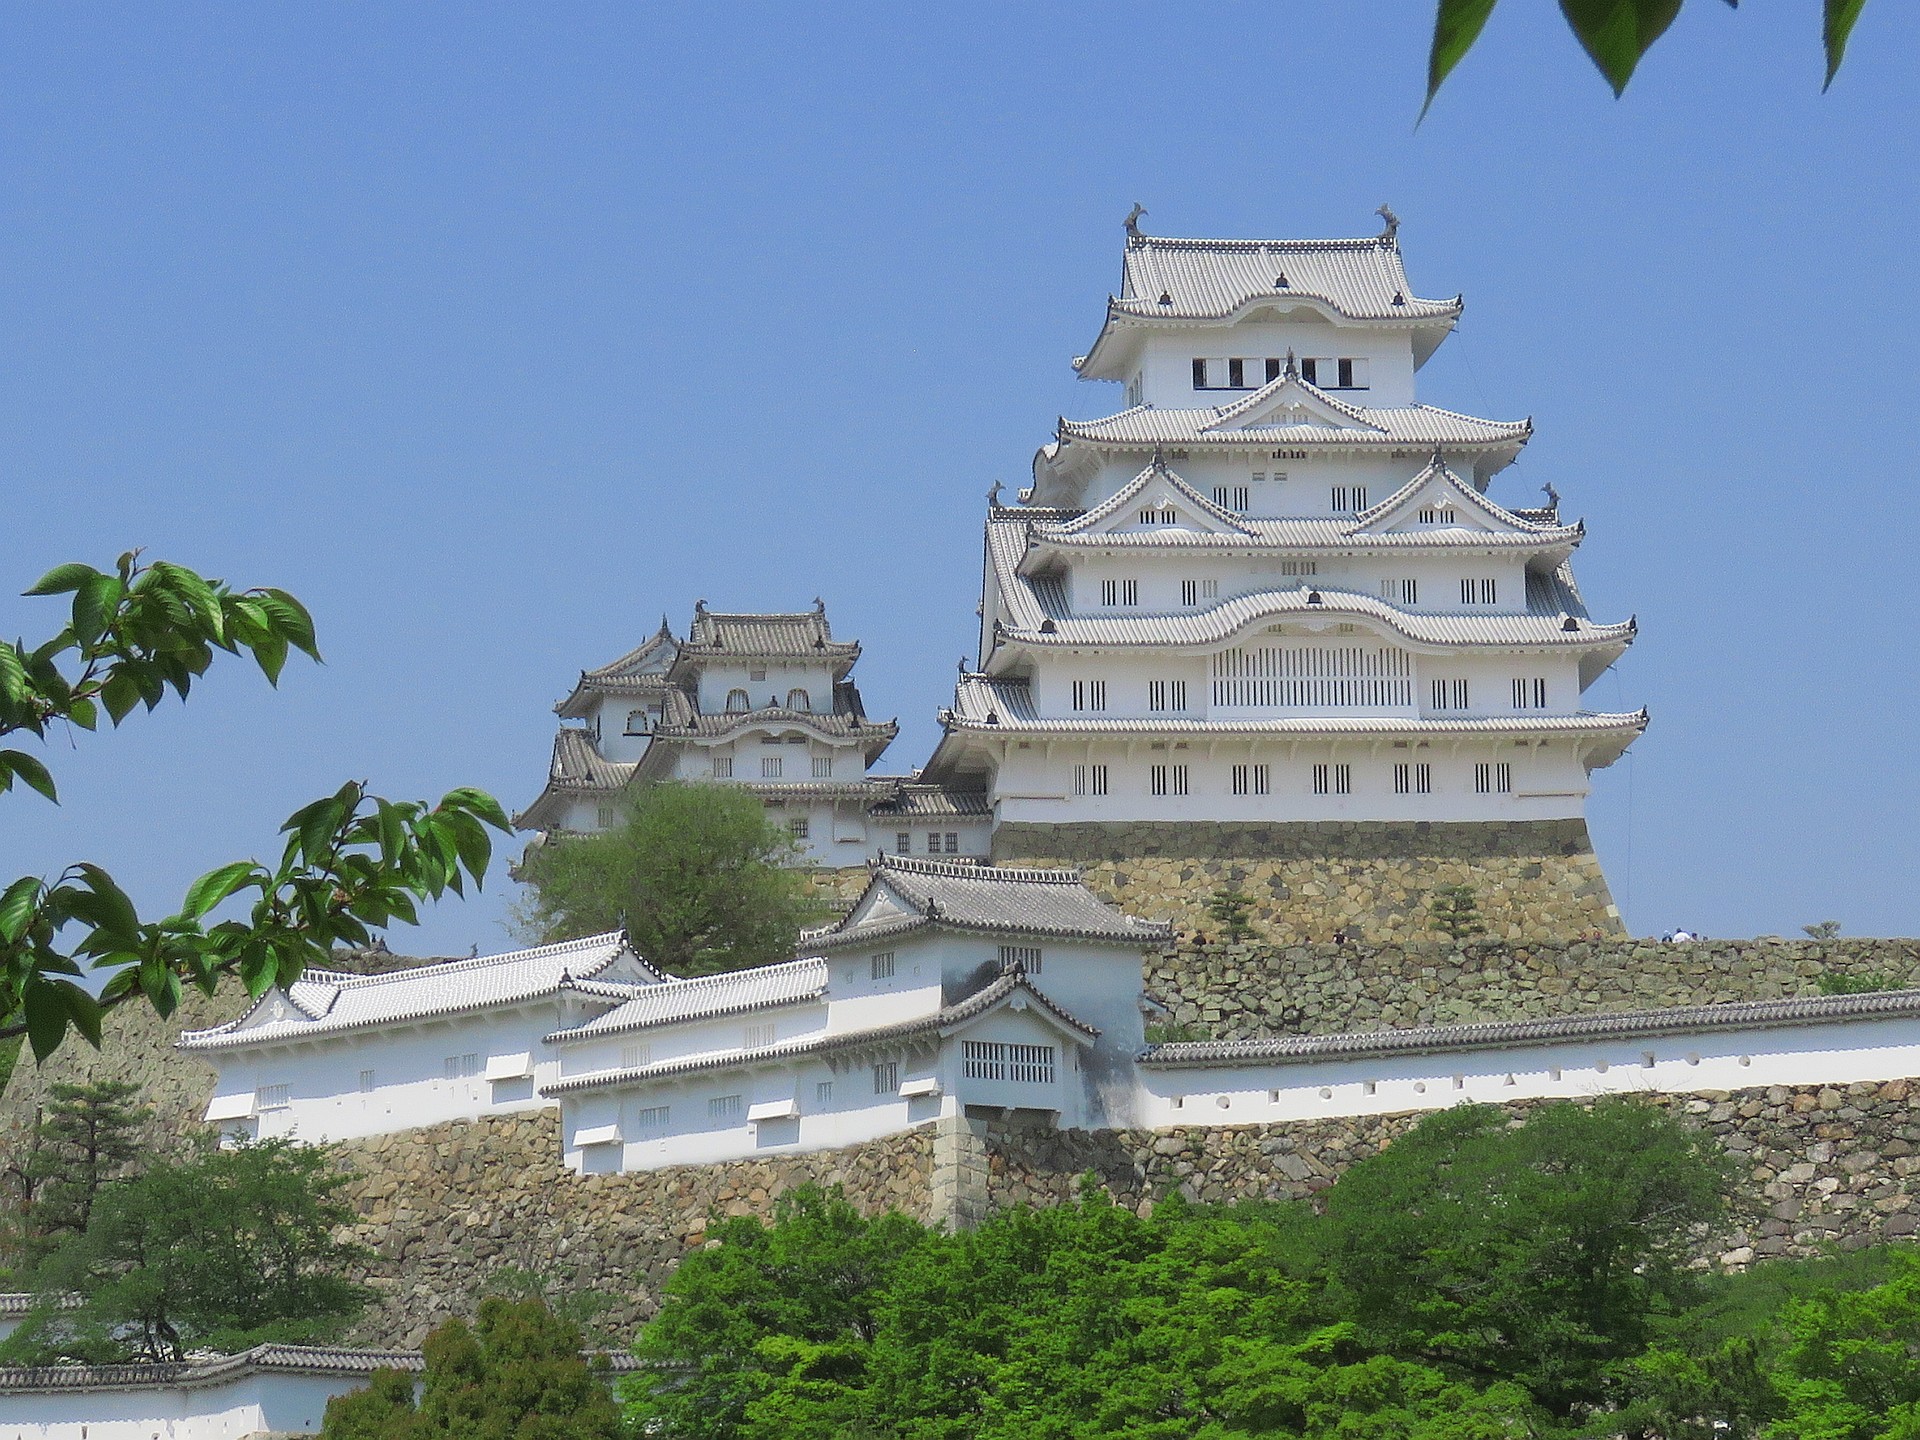 日本の風景 晴天の姫路城 壁紙19x1440 壁紙館